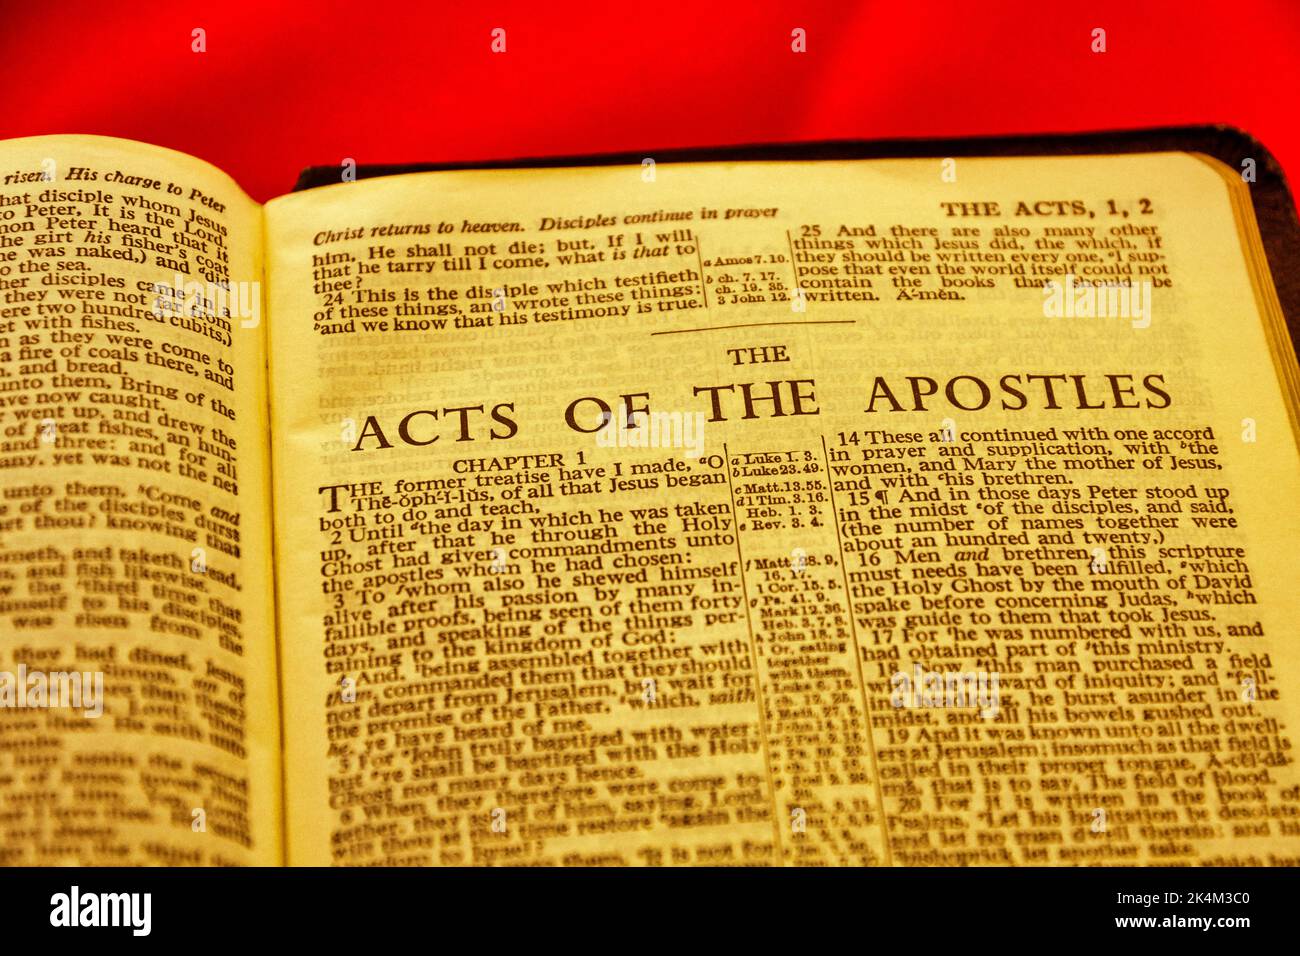 Gros plan de la page antique de la Sainte Bible, profondeur de champ peu profonde avec l'accent sur le titre de chapitre, les actes des Apôtres Banque D'Images